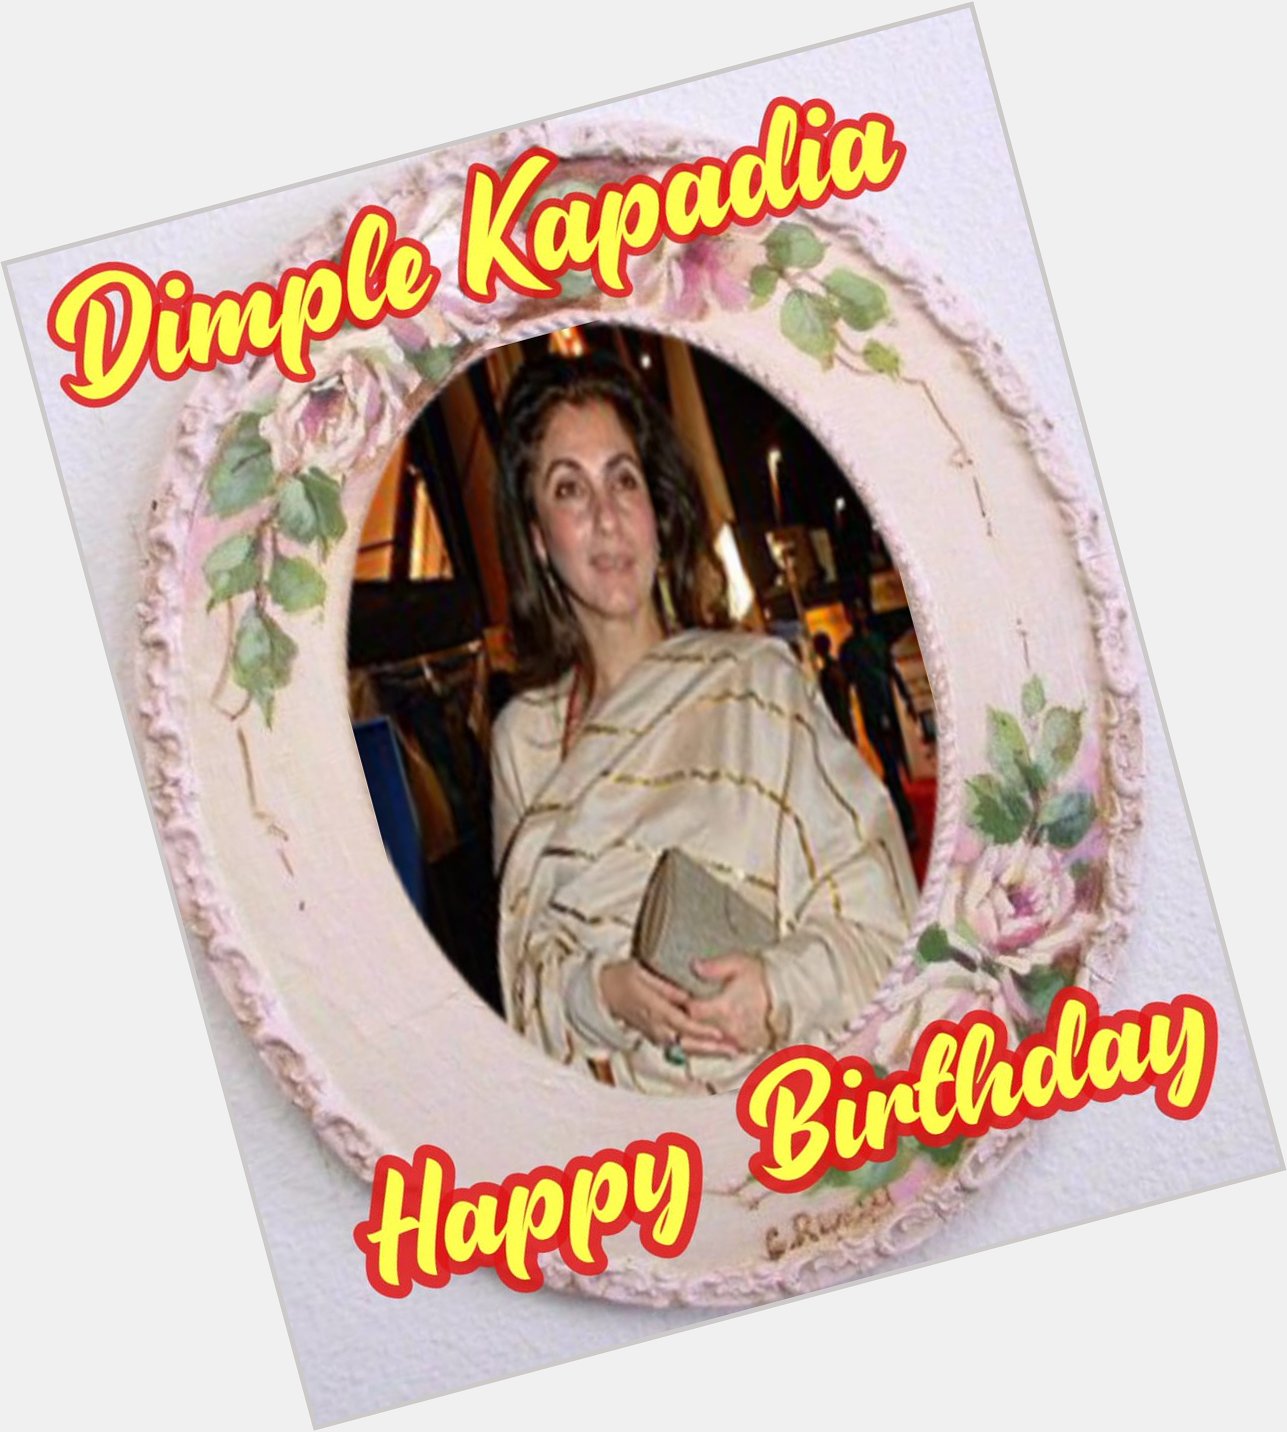 Happy Birthday Dimple Kapadia    